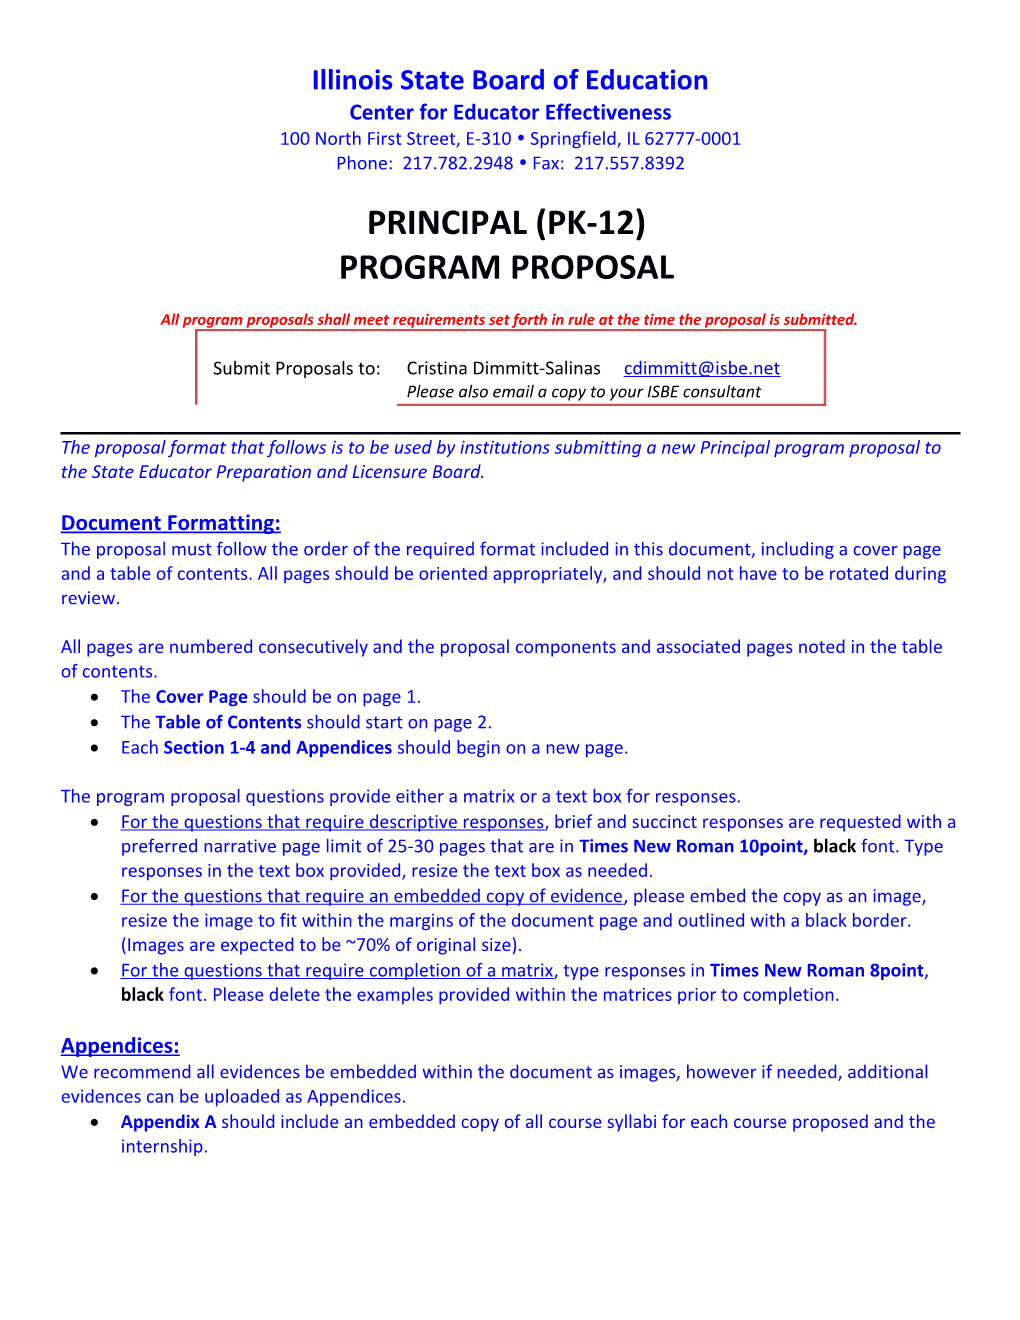 Principal (PK-12) Program Proposal